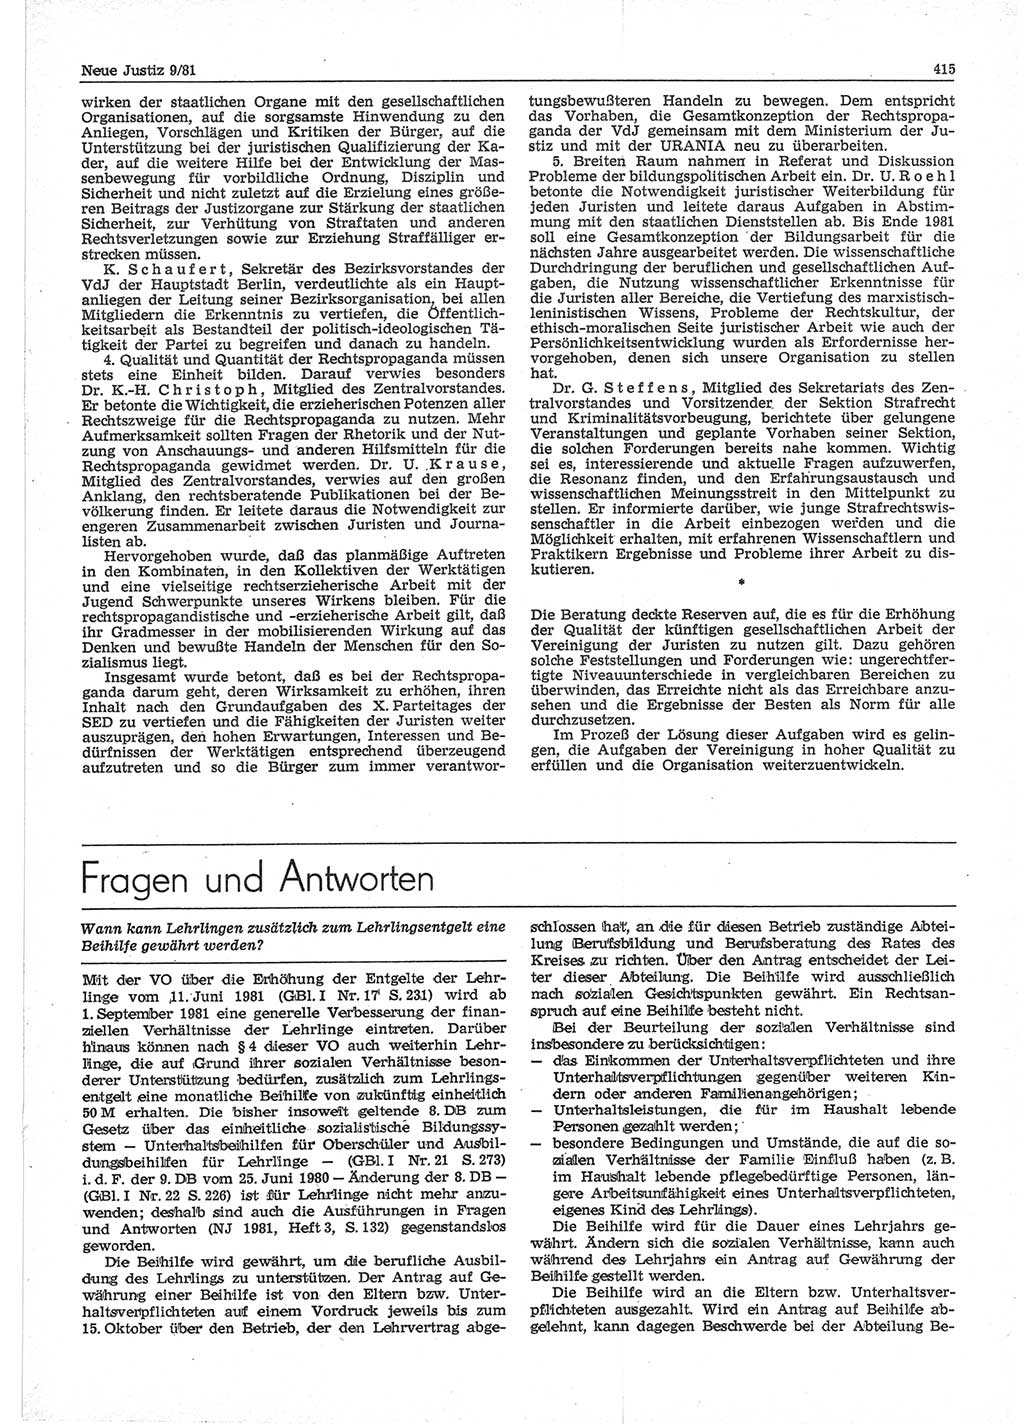 Neue Justiz (NJ), Zeitschrift für sozialistisches Recht und Gesetzlichkeit [Deutsche Demokratische Republik (DDR)], 35. Jahrgang 1981, Seite 415 (NJ DDR 1981, S. 415)